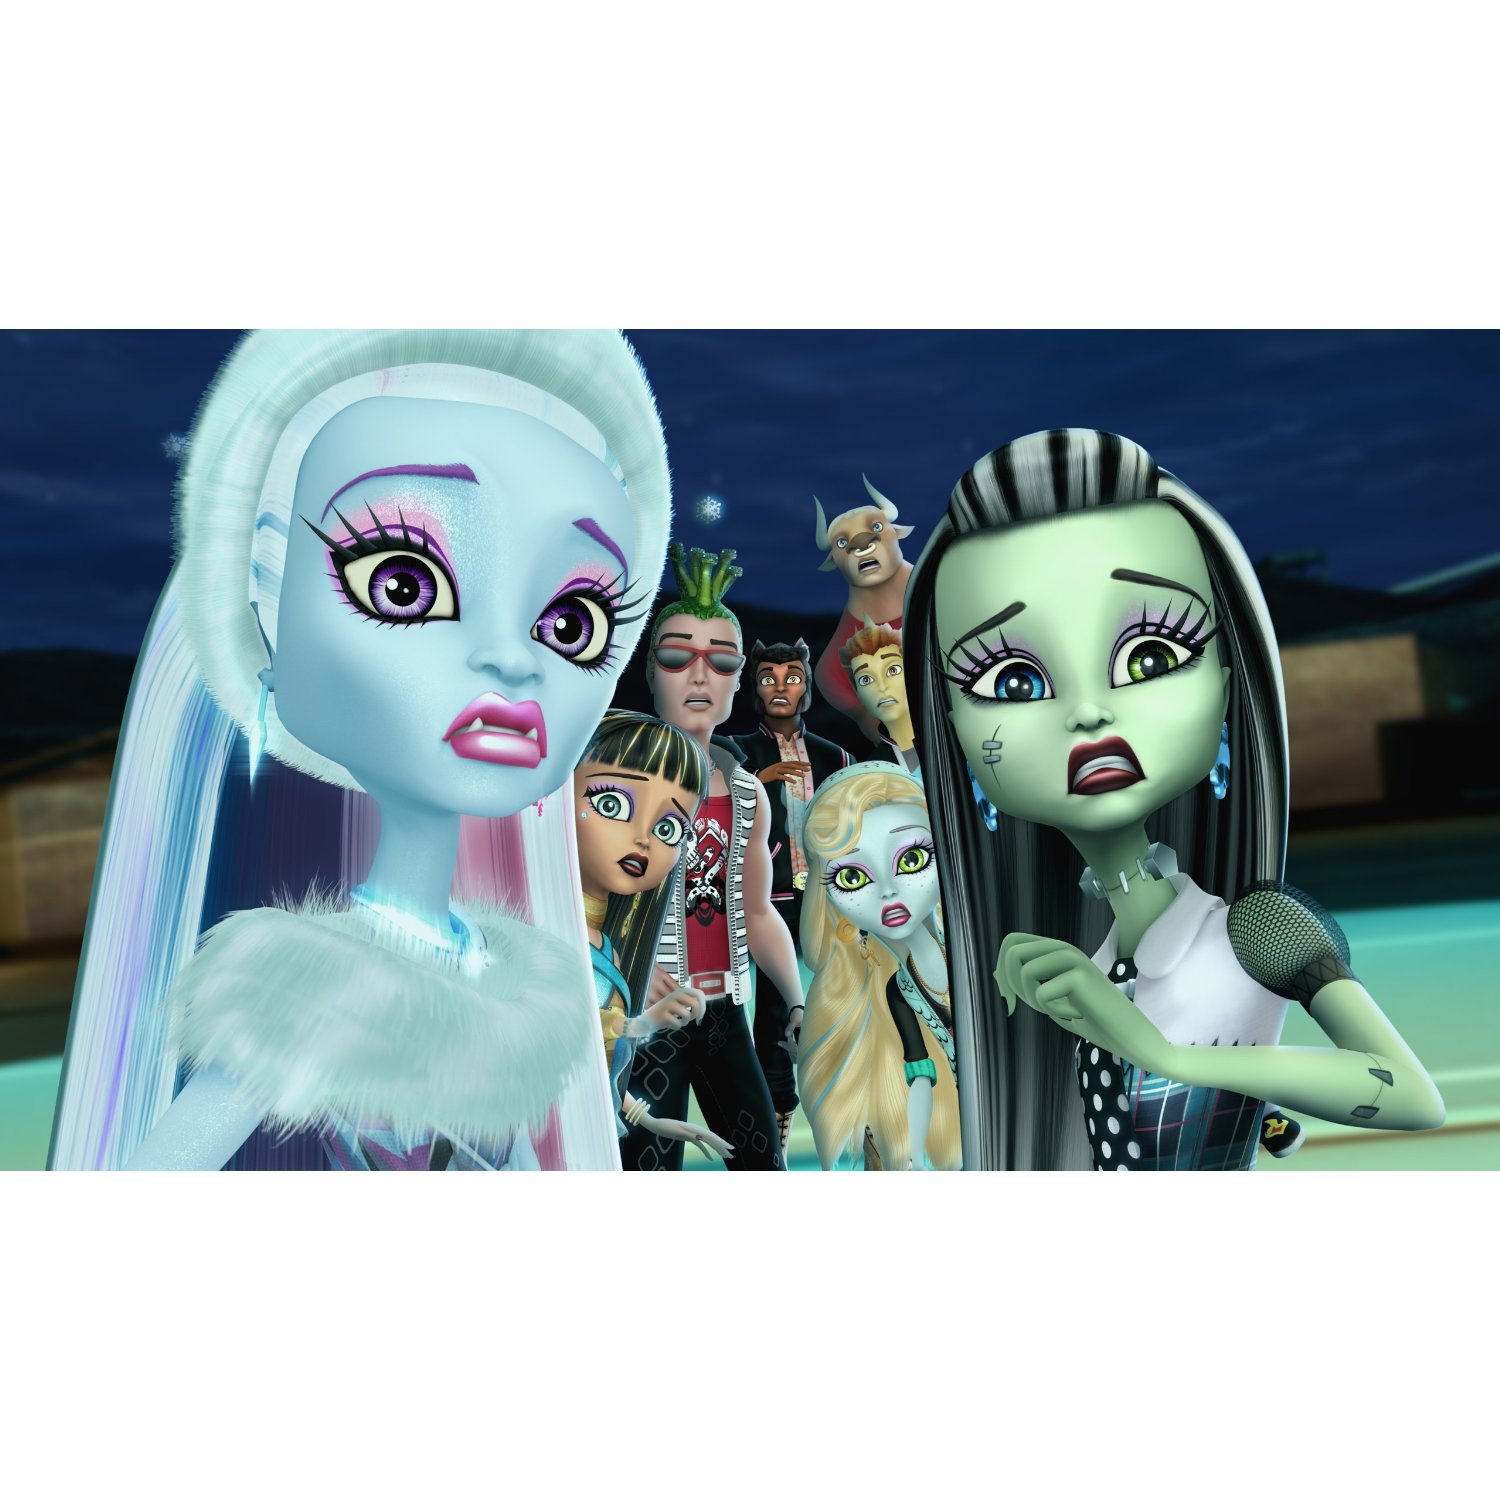 Monster High: Ghouls Rule HD wallpapers, Desktop wallpaper - most viewed